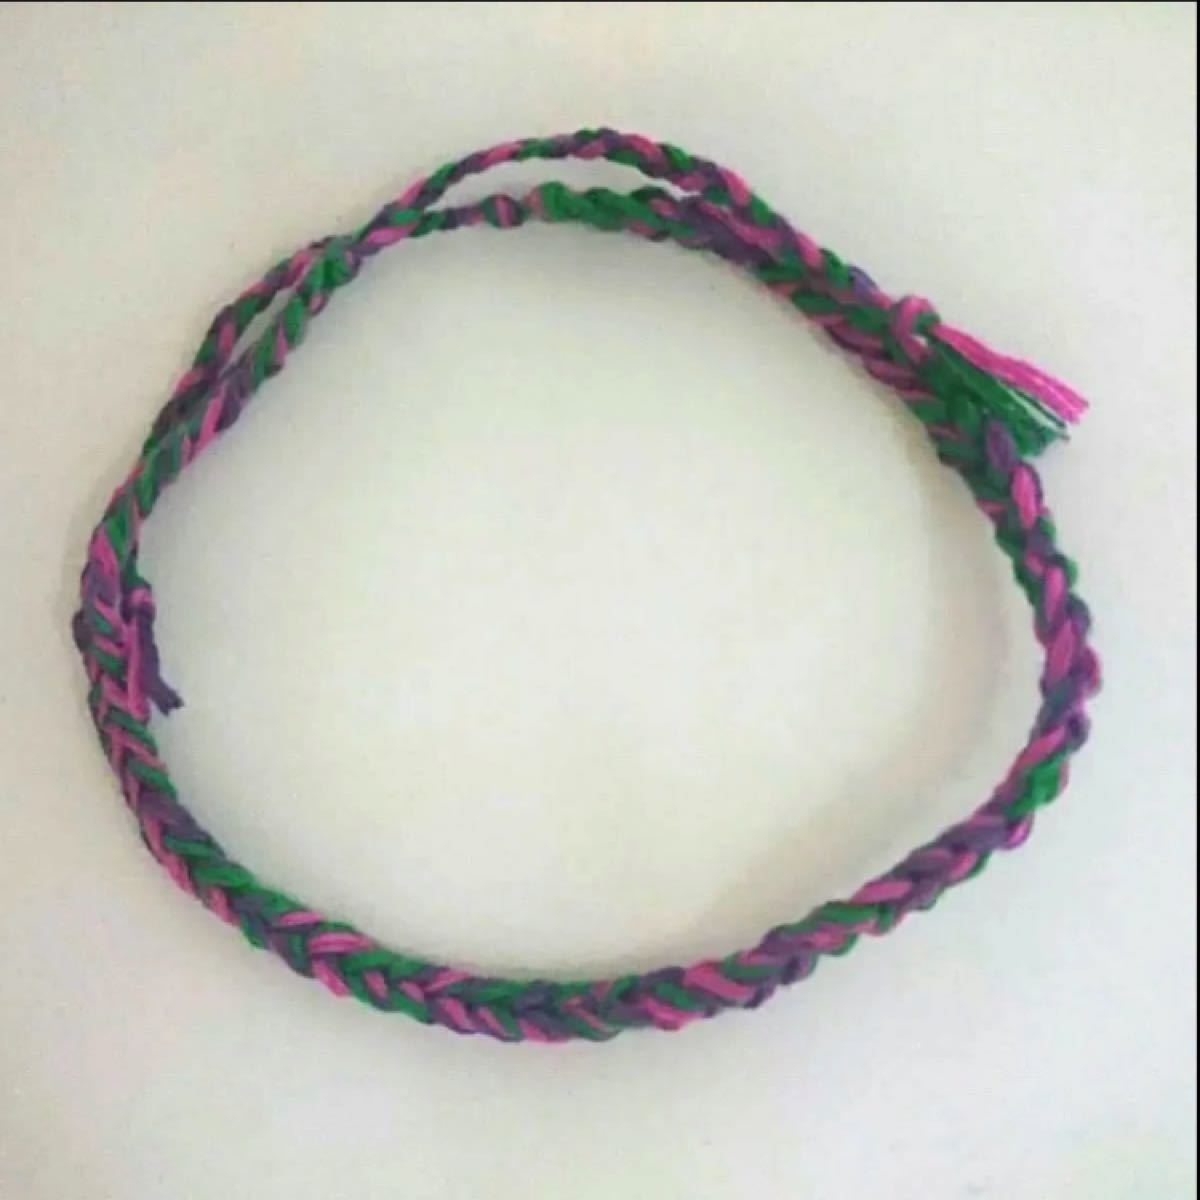 ミサンガ アンクレット ブレスレット 刺繍糸 アクセサリー ハンドメイド 緑 紫 グリーン パープル